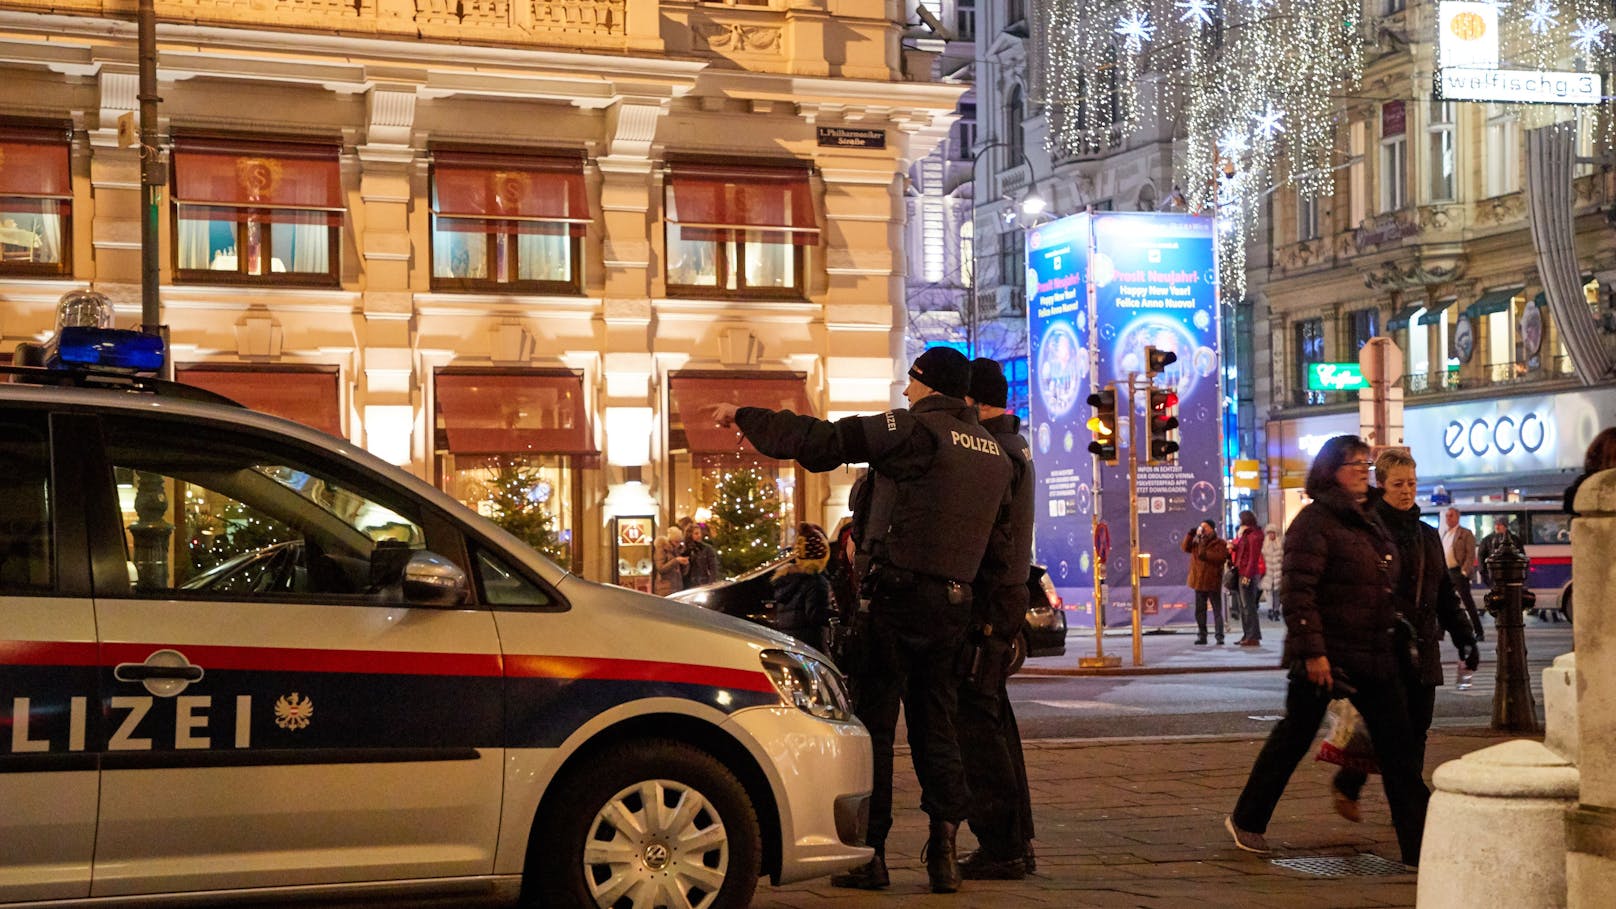 Höhere Terrorwarnung, Böller – Polizei im Großeinsatz